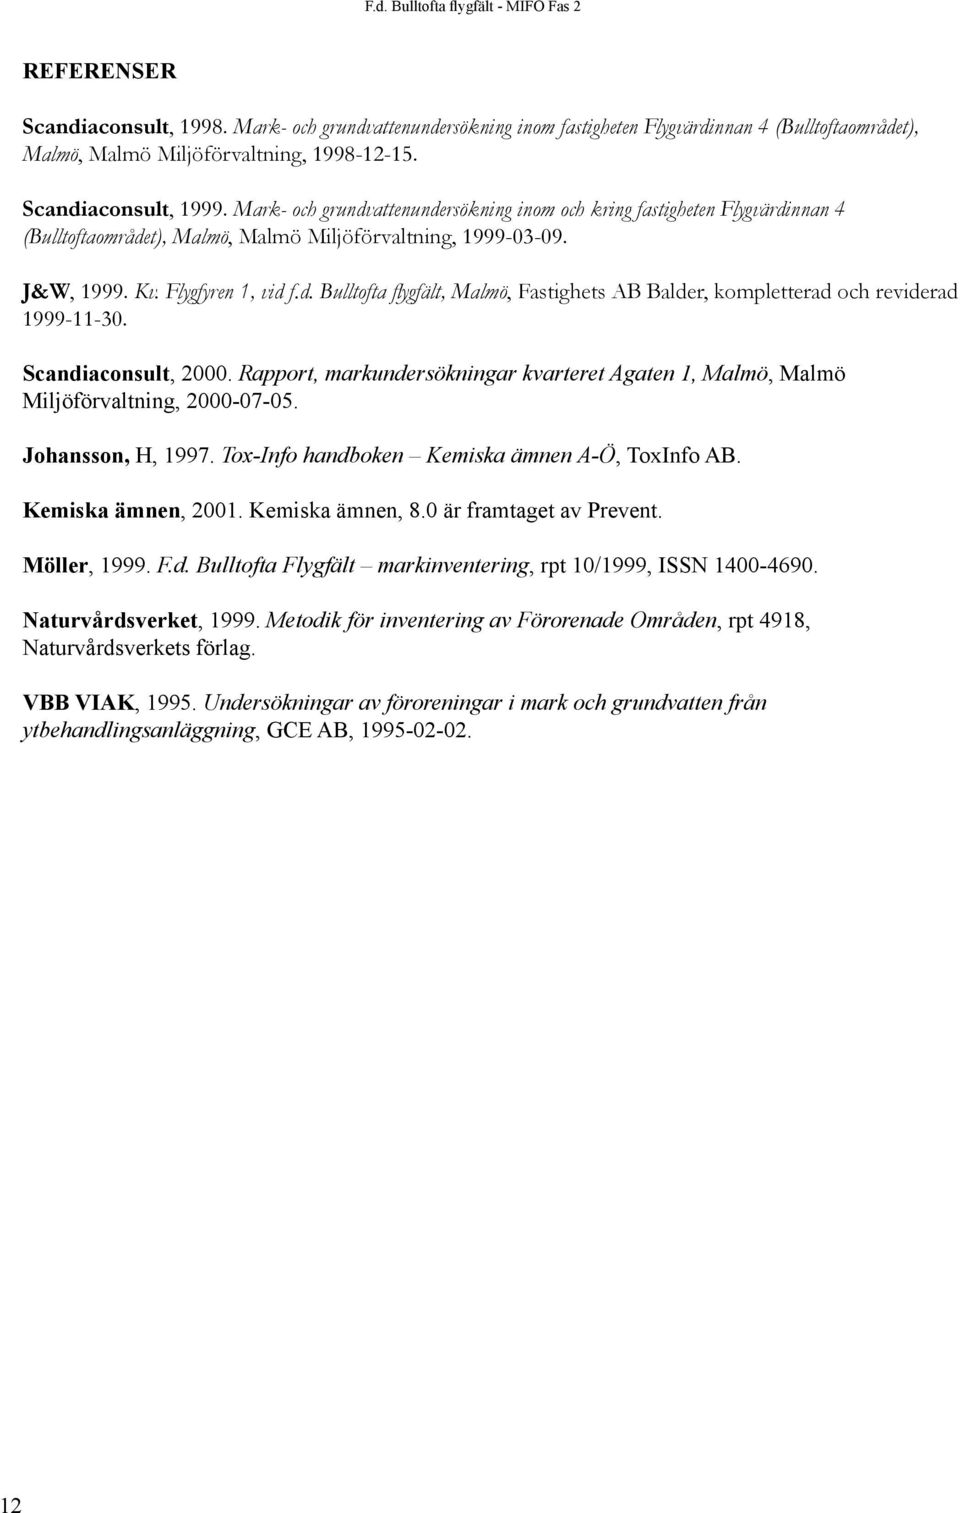 Scandiaconsult, 2000. Rapport, markundersökningar kvarteret Agaten 1, Malmö, Malmö Miljöförvaltning, 2000-07-05. Johansson, H, 1997. Tox-Info handboken Kemiska ämnen A-Ö, ToxInfo AB.